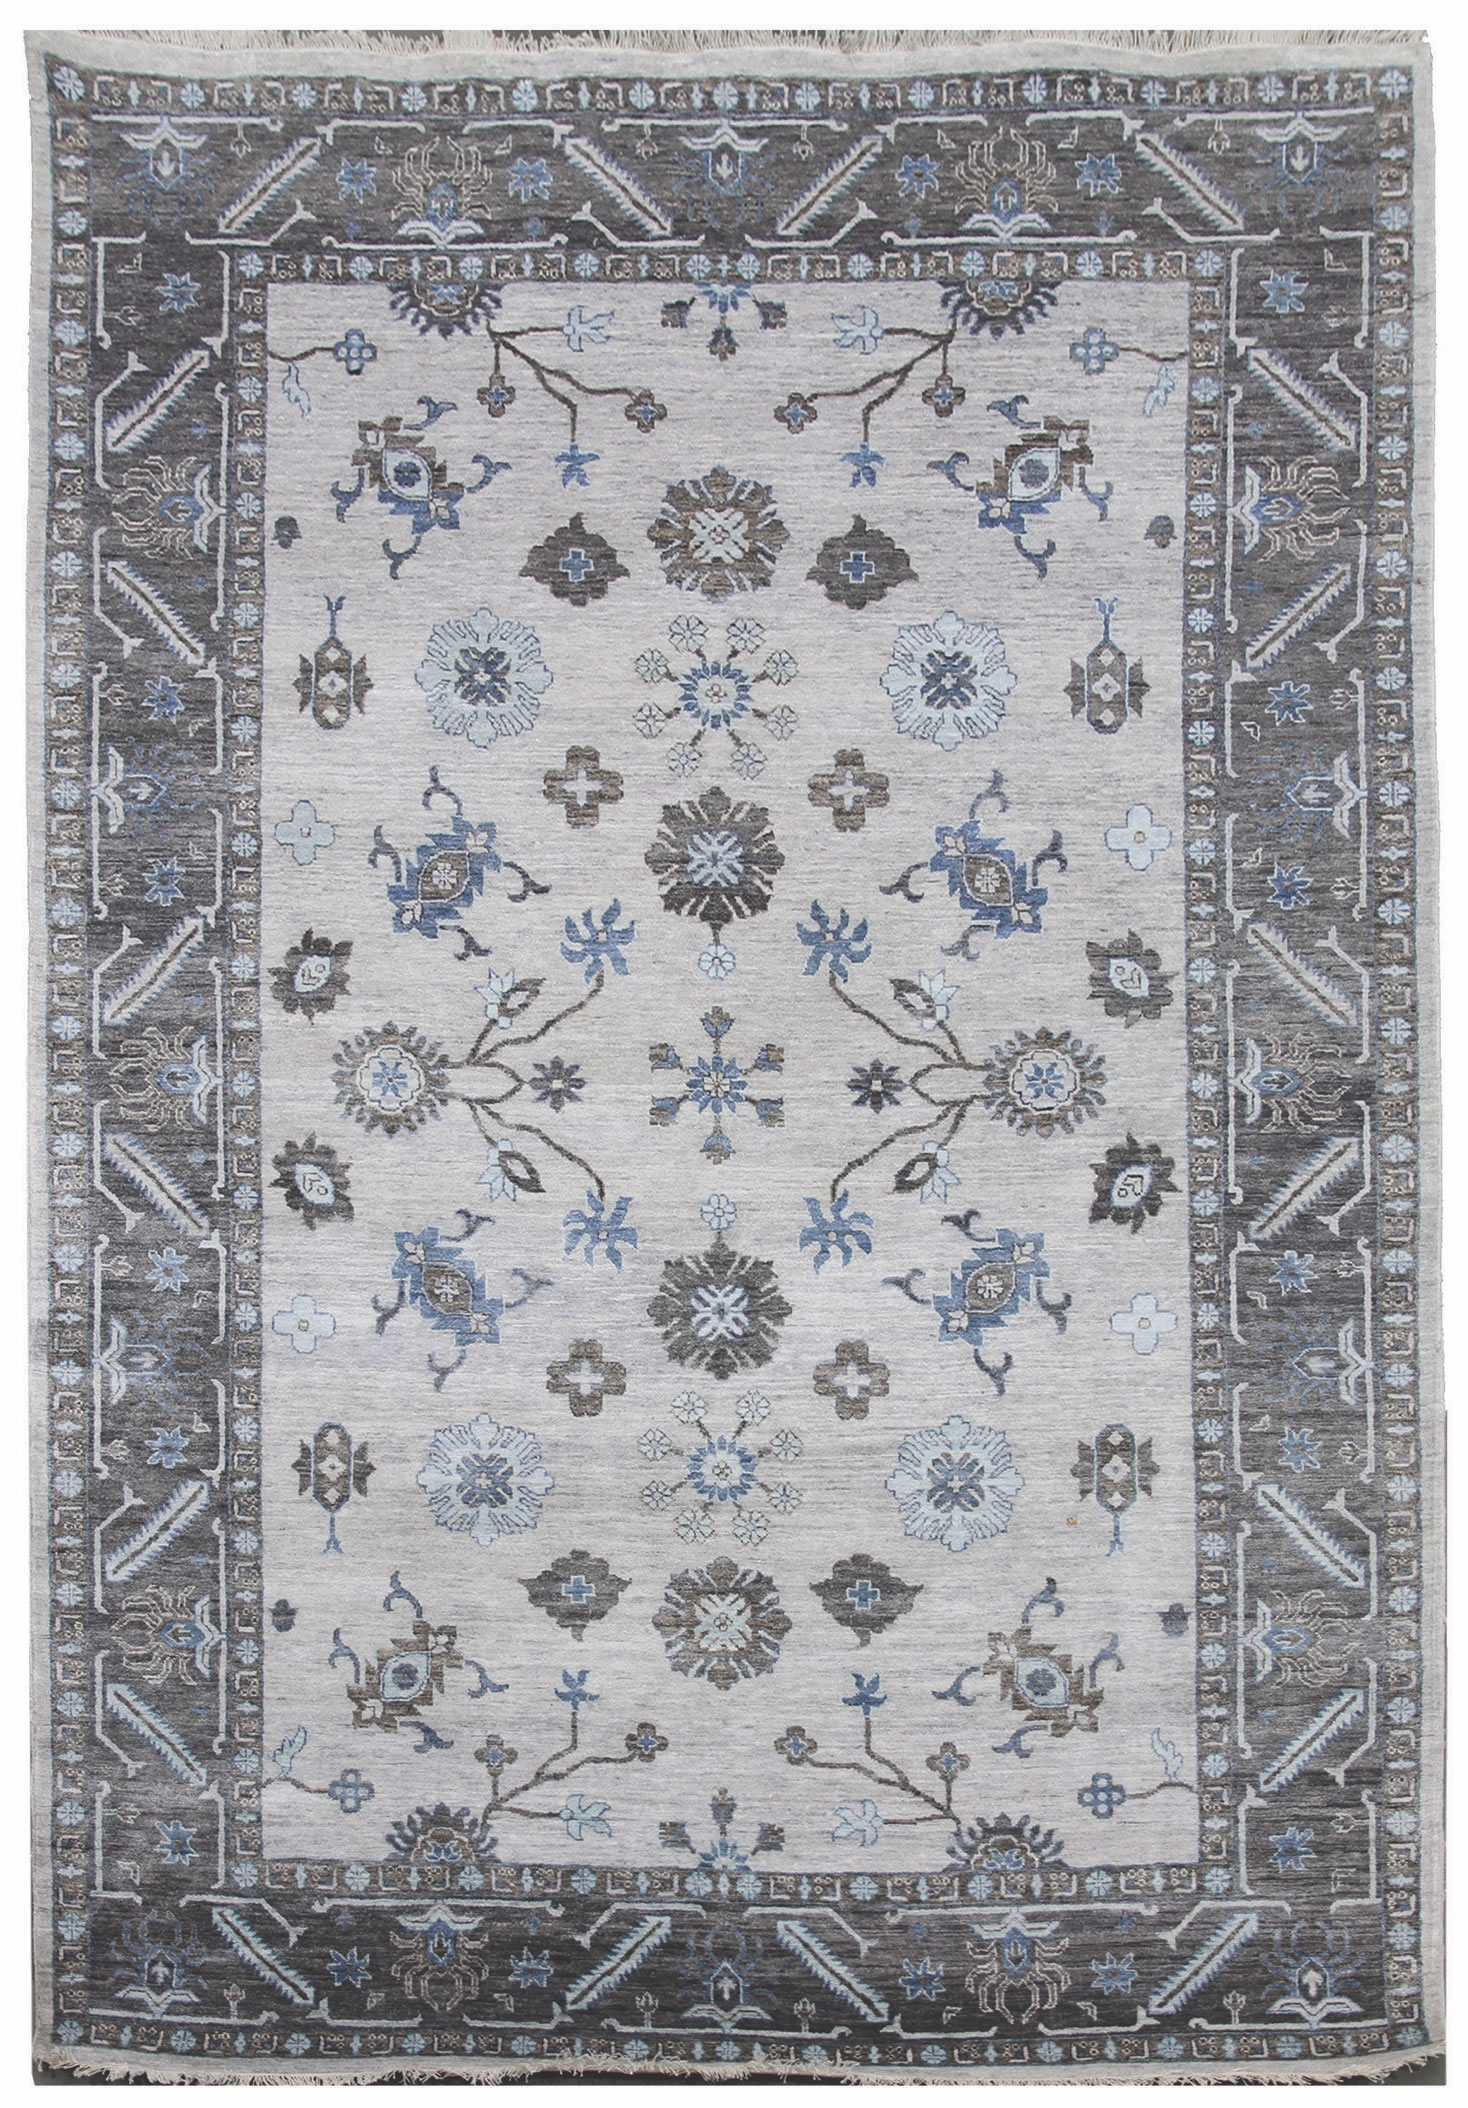 Ručne viazaný kusový koberec Diamond DC-USHAK silver / black - 140x200 cm Diamond Carpets koberce 